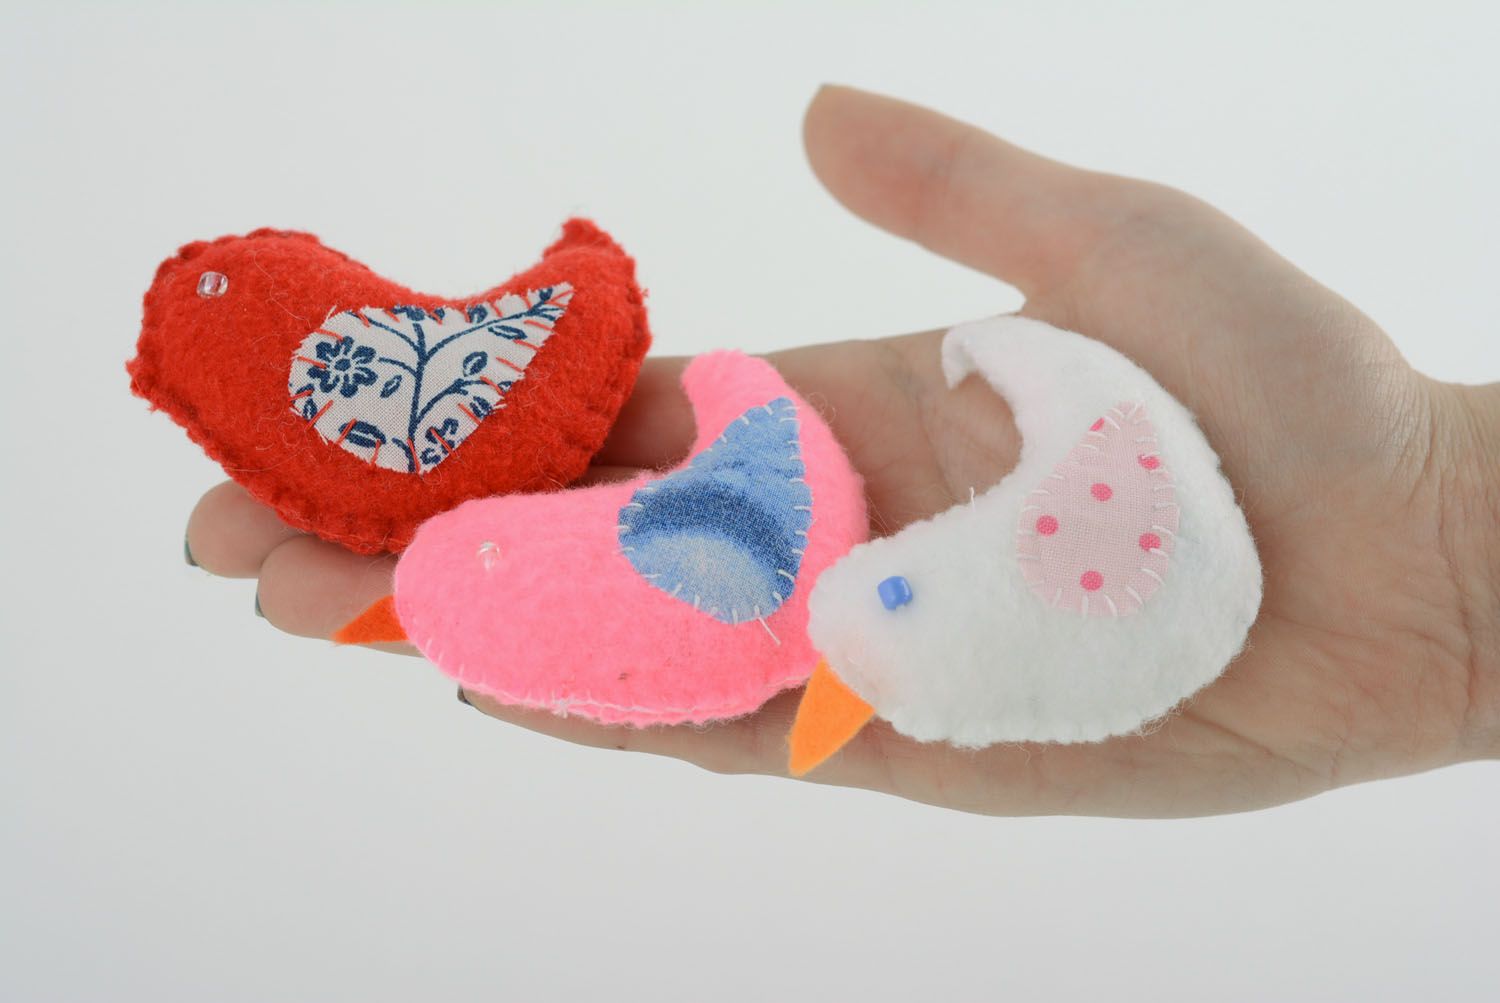 Ensemble des jouets oiseaux en tissu faits main aromatisés rose rouge et blanc photo 3